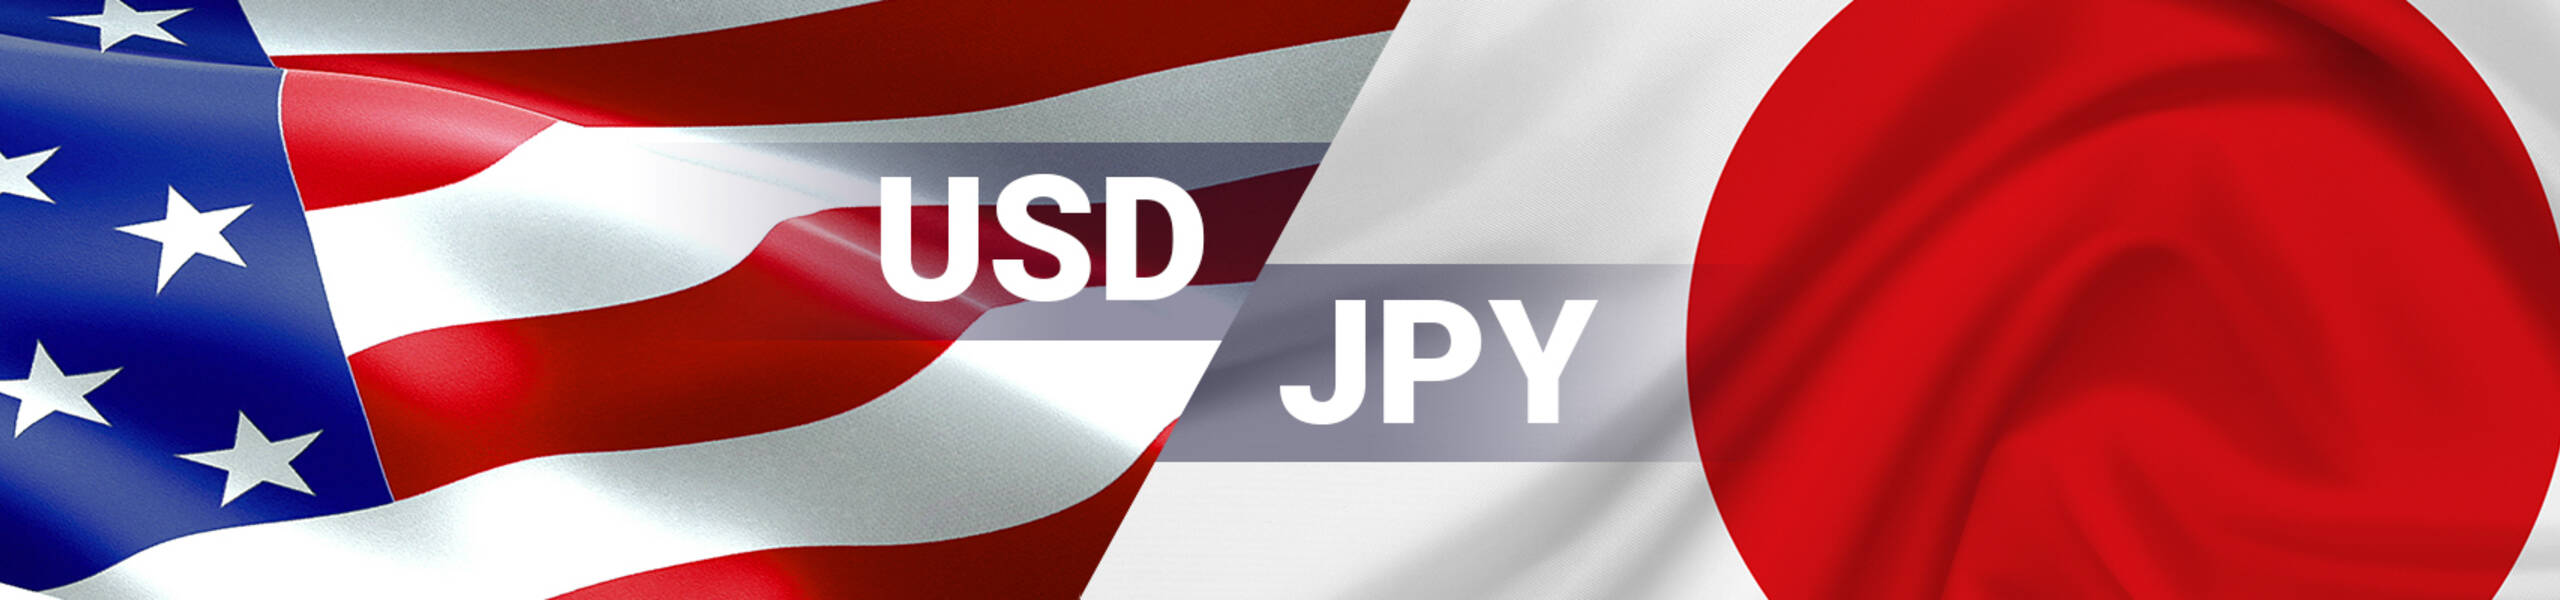 USD/JPY broke resistance level 112.90